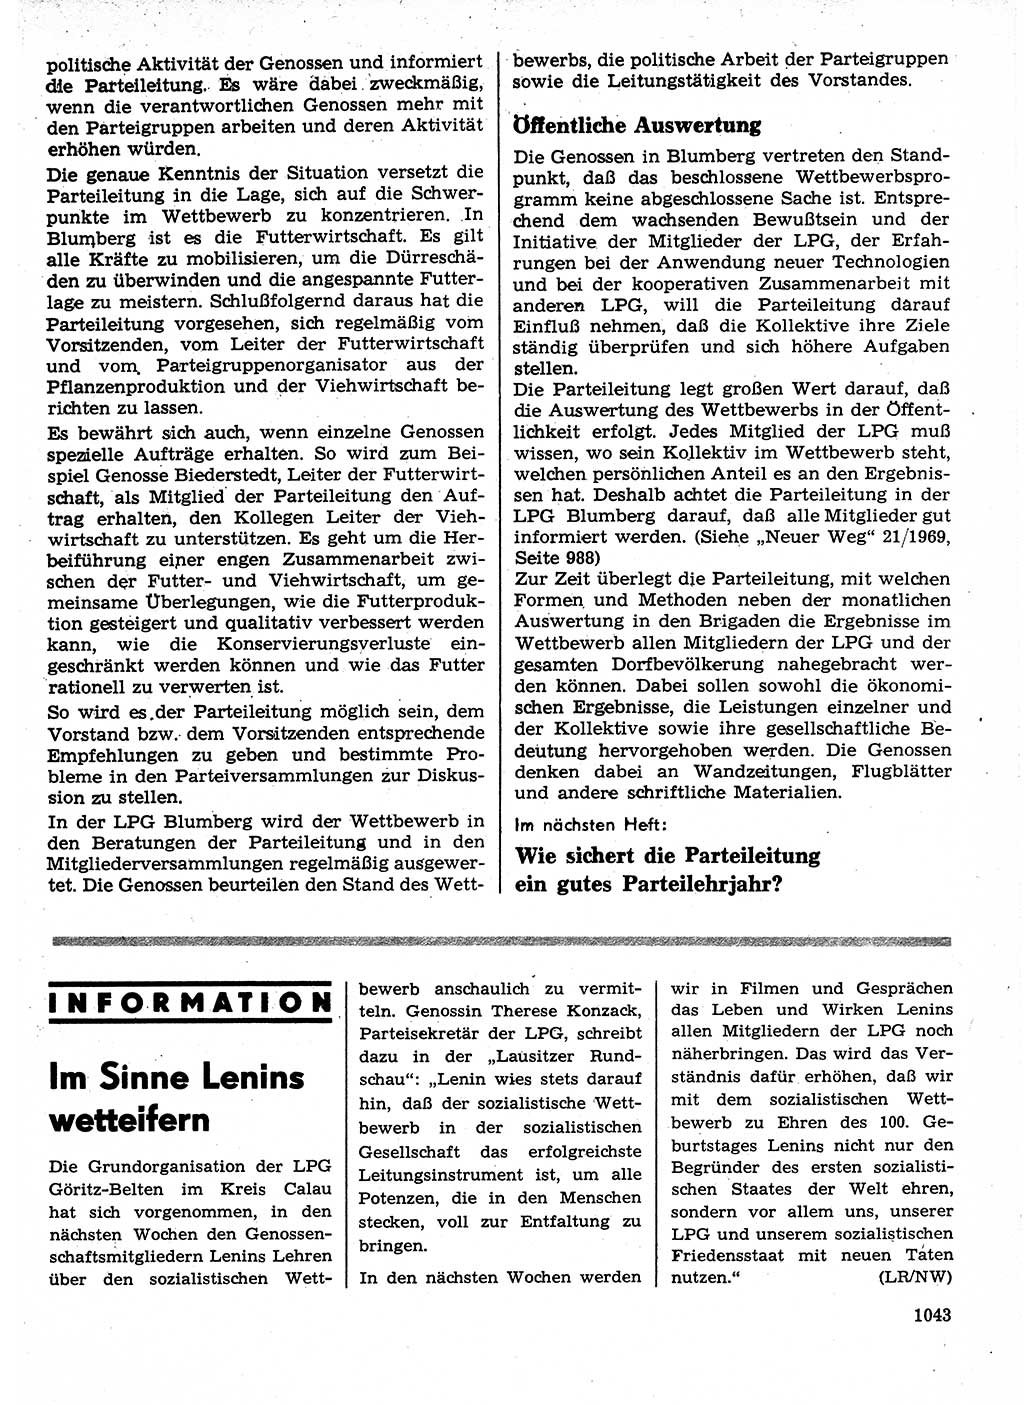 Neuer Weg (NW), Organ des Zentralkomitees (ZK) der SED (Sozialistische Einheitspartei Deutschlands) für Fragen des Parteilebens, 24. Jahrgang [Deutsche Demokratische Republik (DDR)] 1969, Seite 1043 (NW ZK SED DDR 1969, S. 1043)